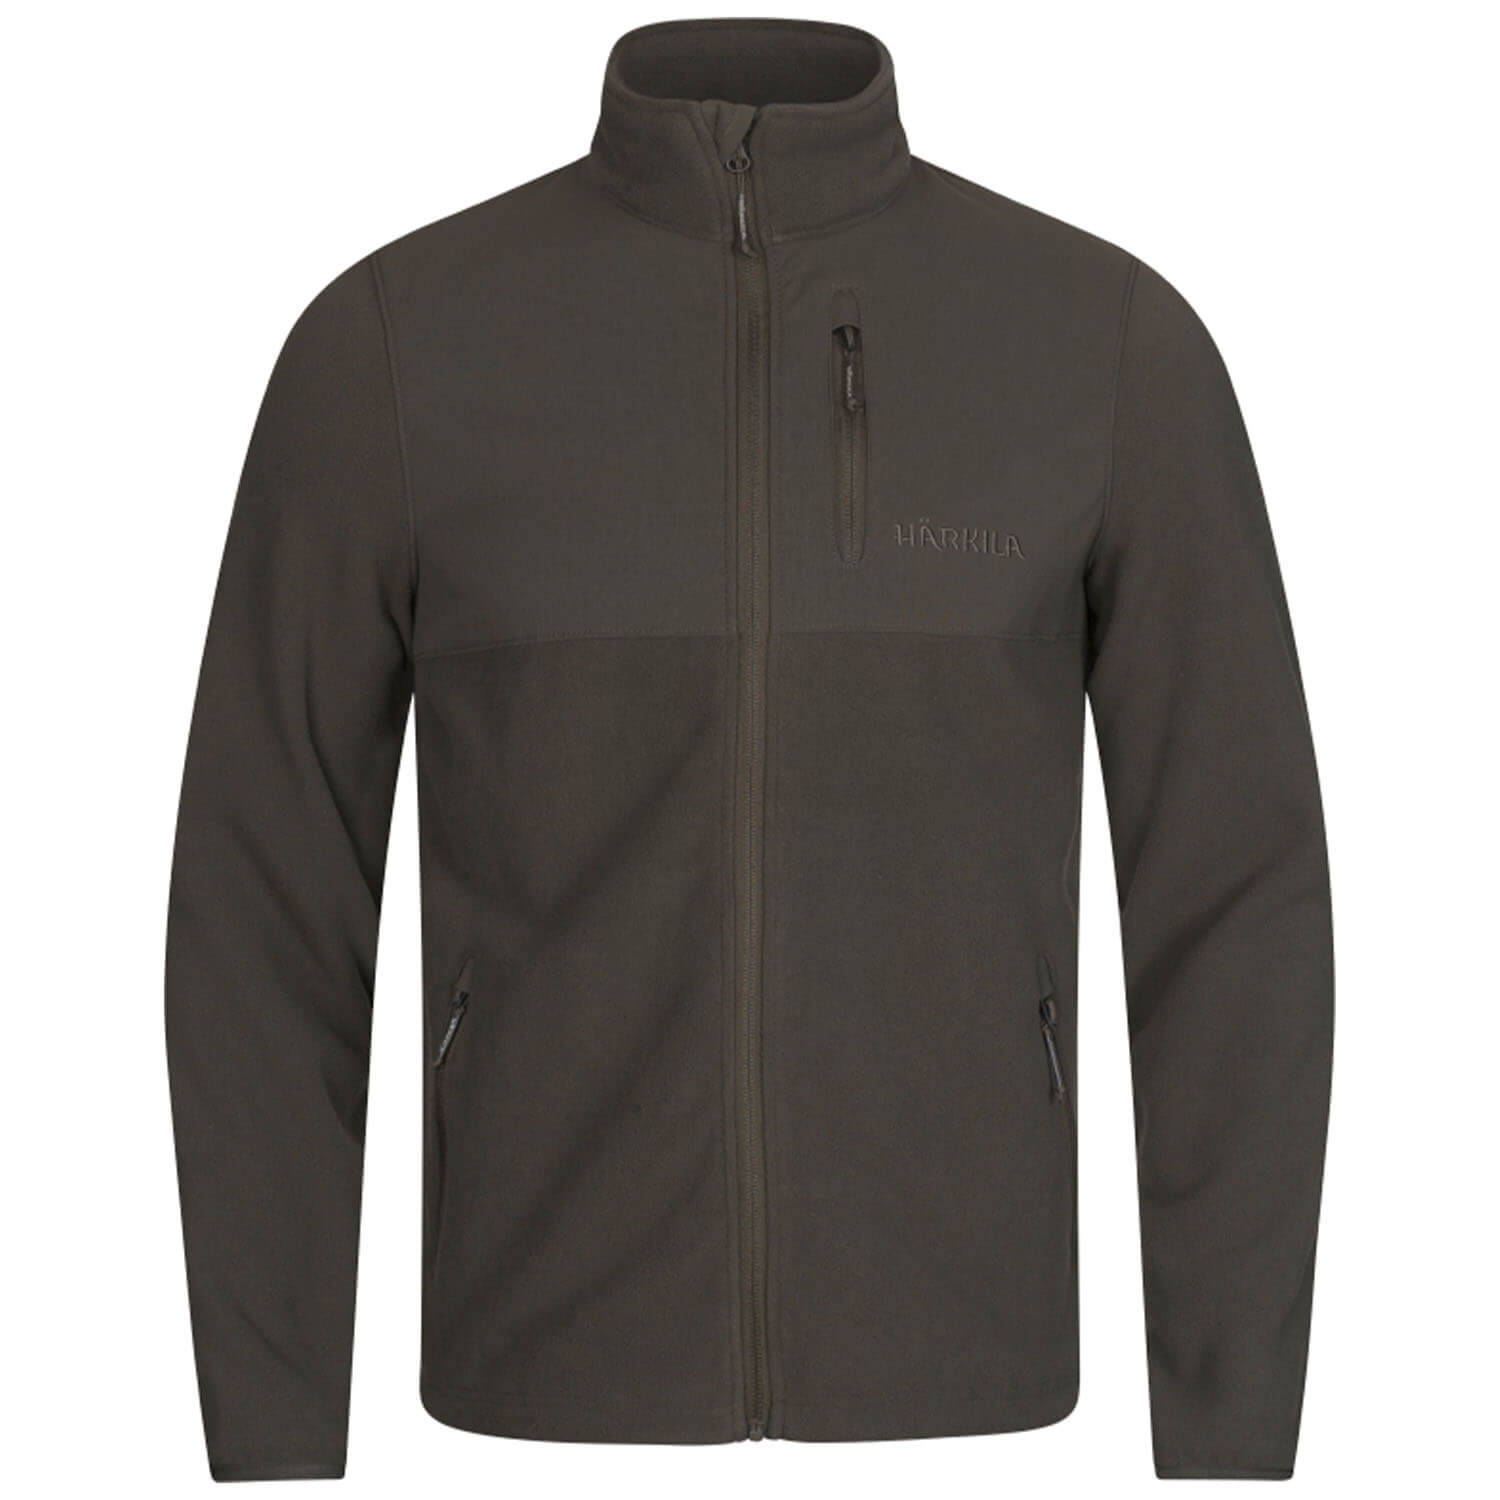  Härkila fleece jacket Fjell (Shadow Brown) - Hunting Jackets